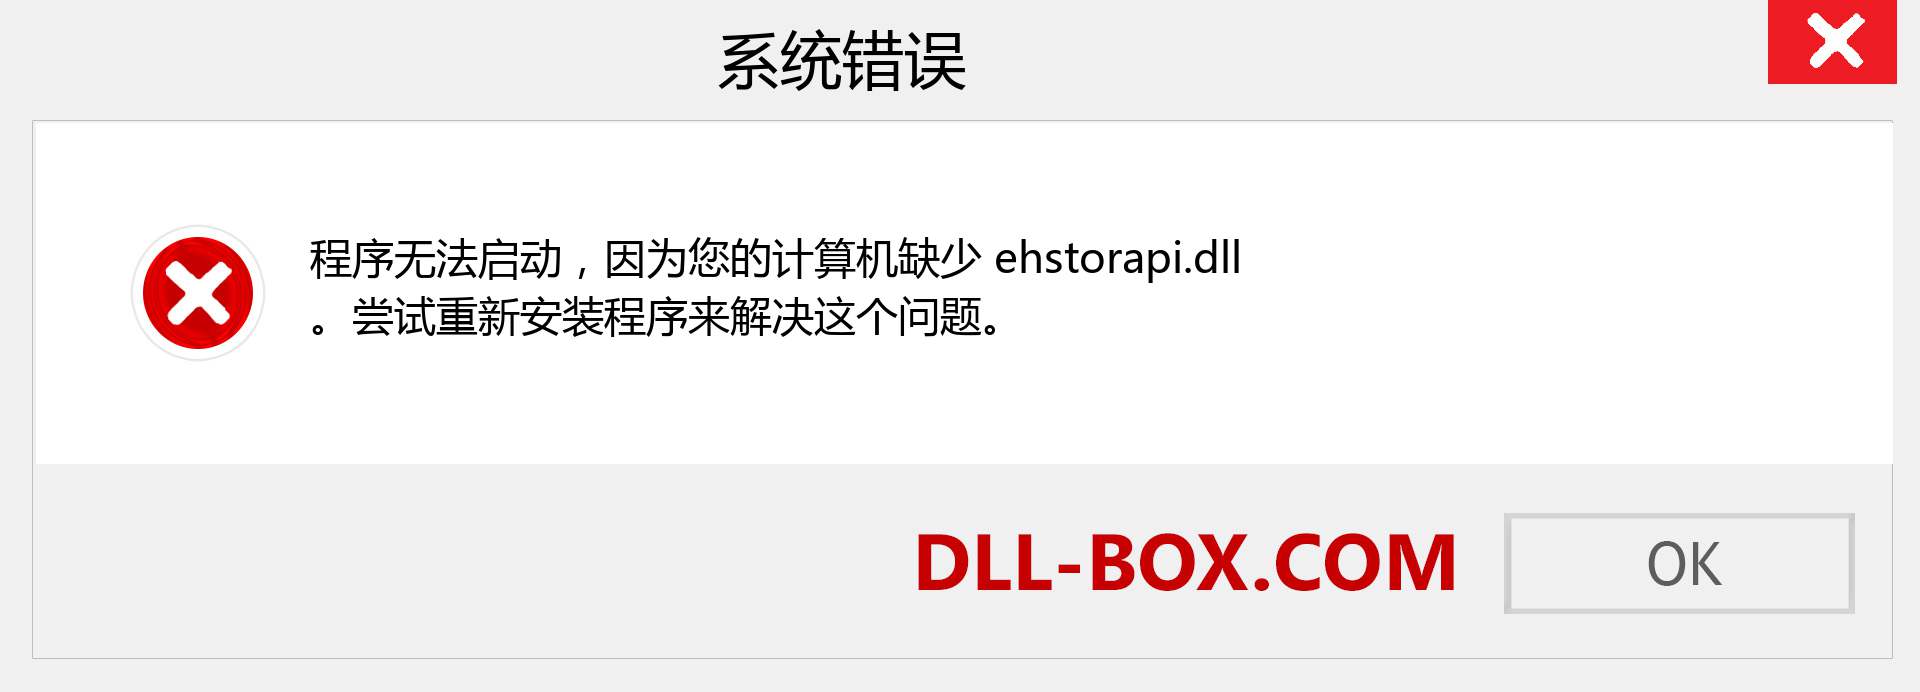 ehstorapi.dll 文件丢失？。 适用于 Windows 7、8、10 的下载 - 修复 Windows、照片、图像上的 ehstorapi dll 丢失错误